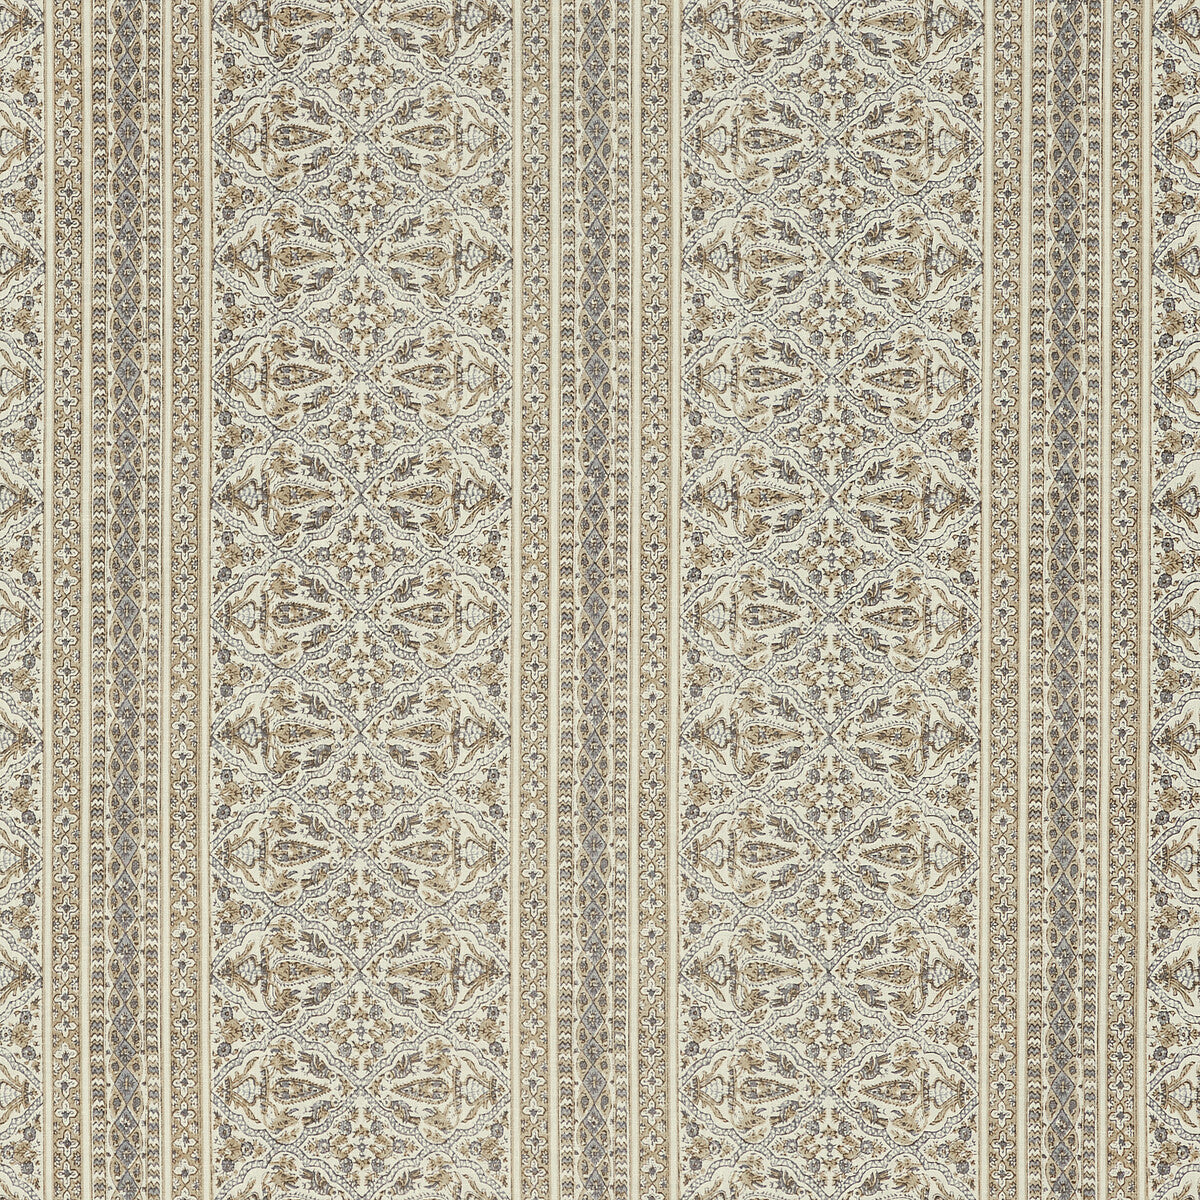 Kravet Basics fabric in mysore-11 color - pattern MYSORE.11.0 - by Kravet Basics in the L&